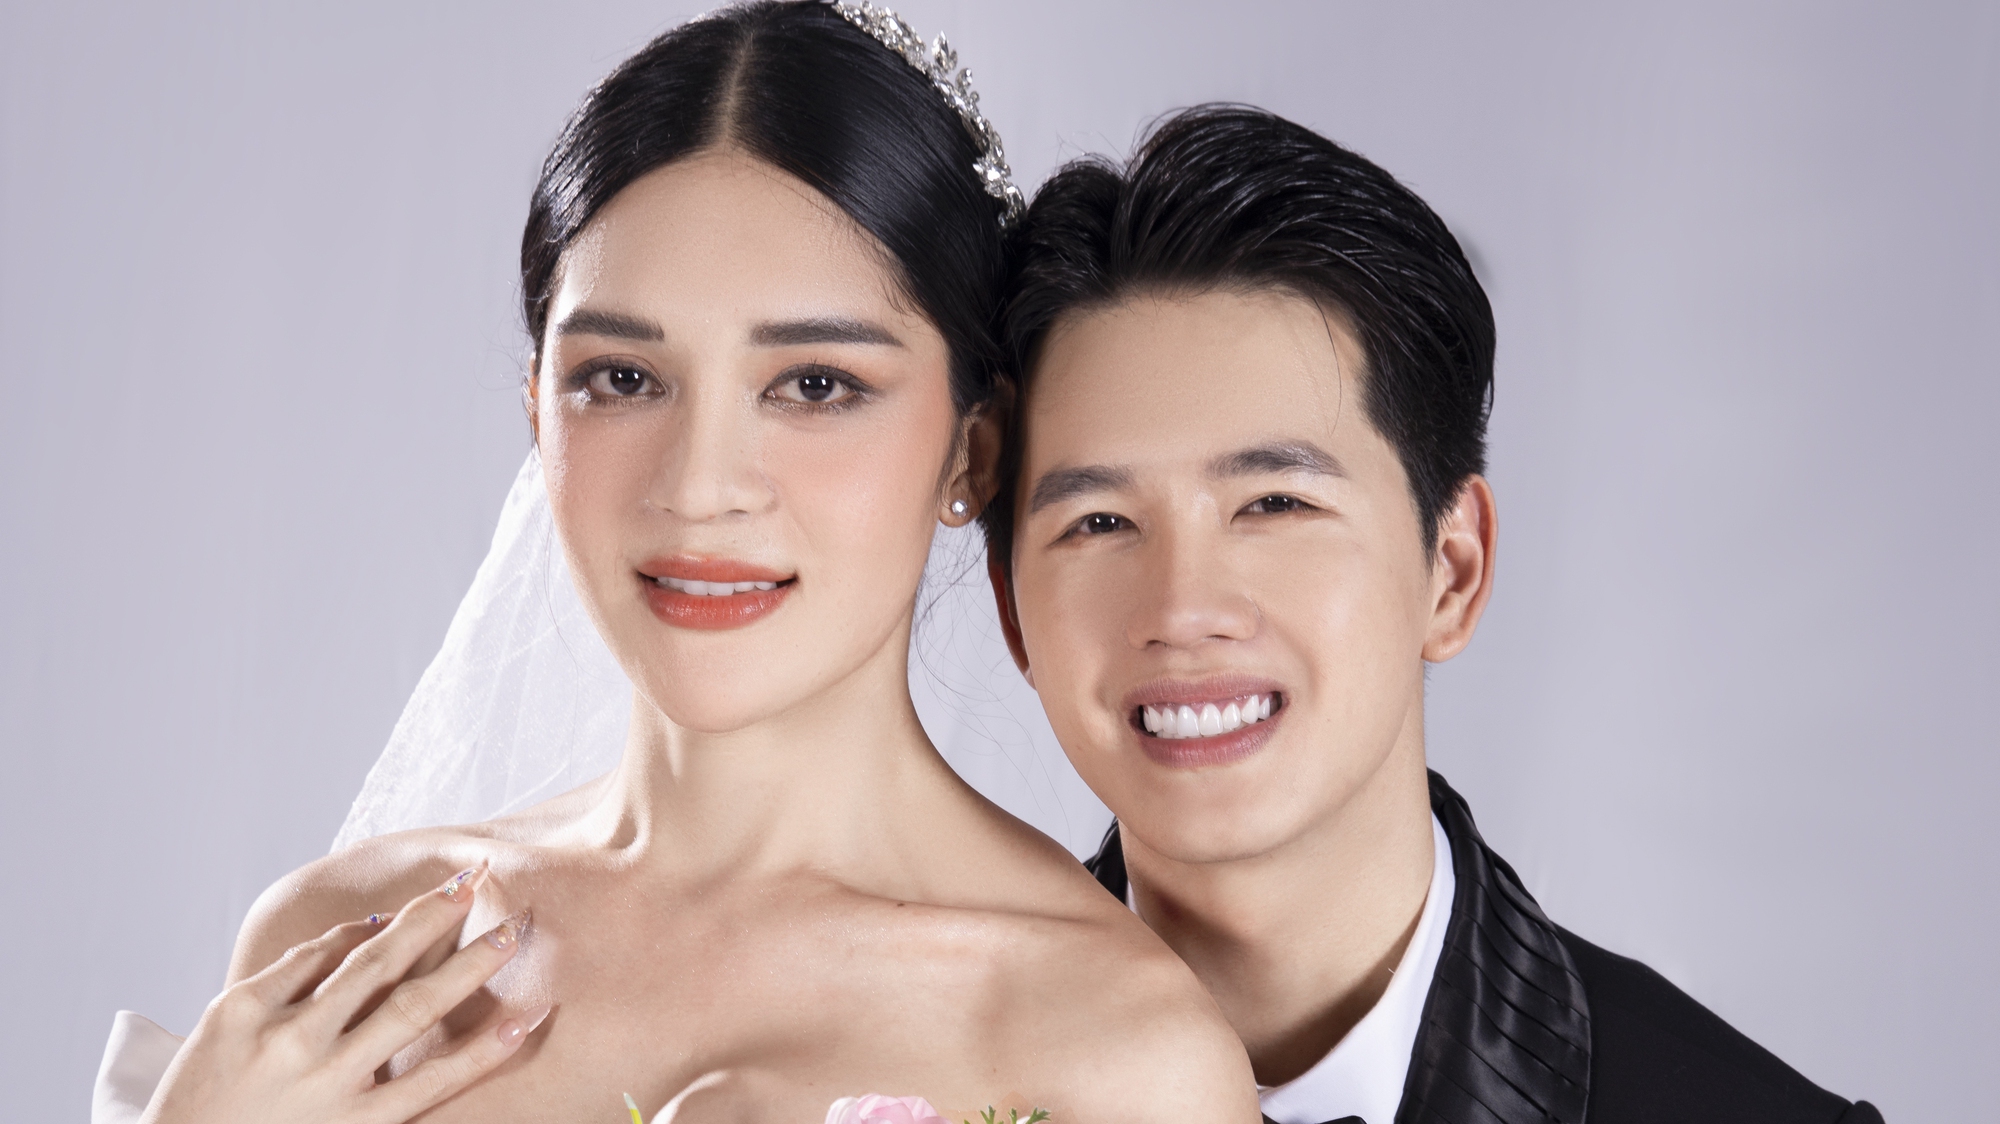 Ảnh cưới 'như ai ép' của thí sinh Hoa hậu Chuyển giới Việt Nam nổi khắp MXH